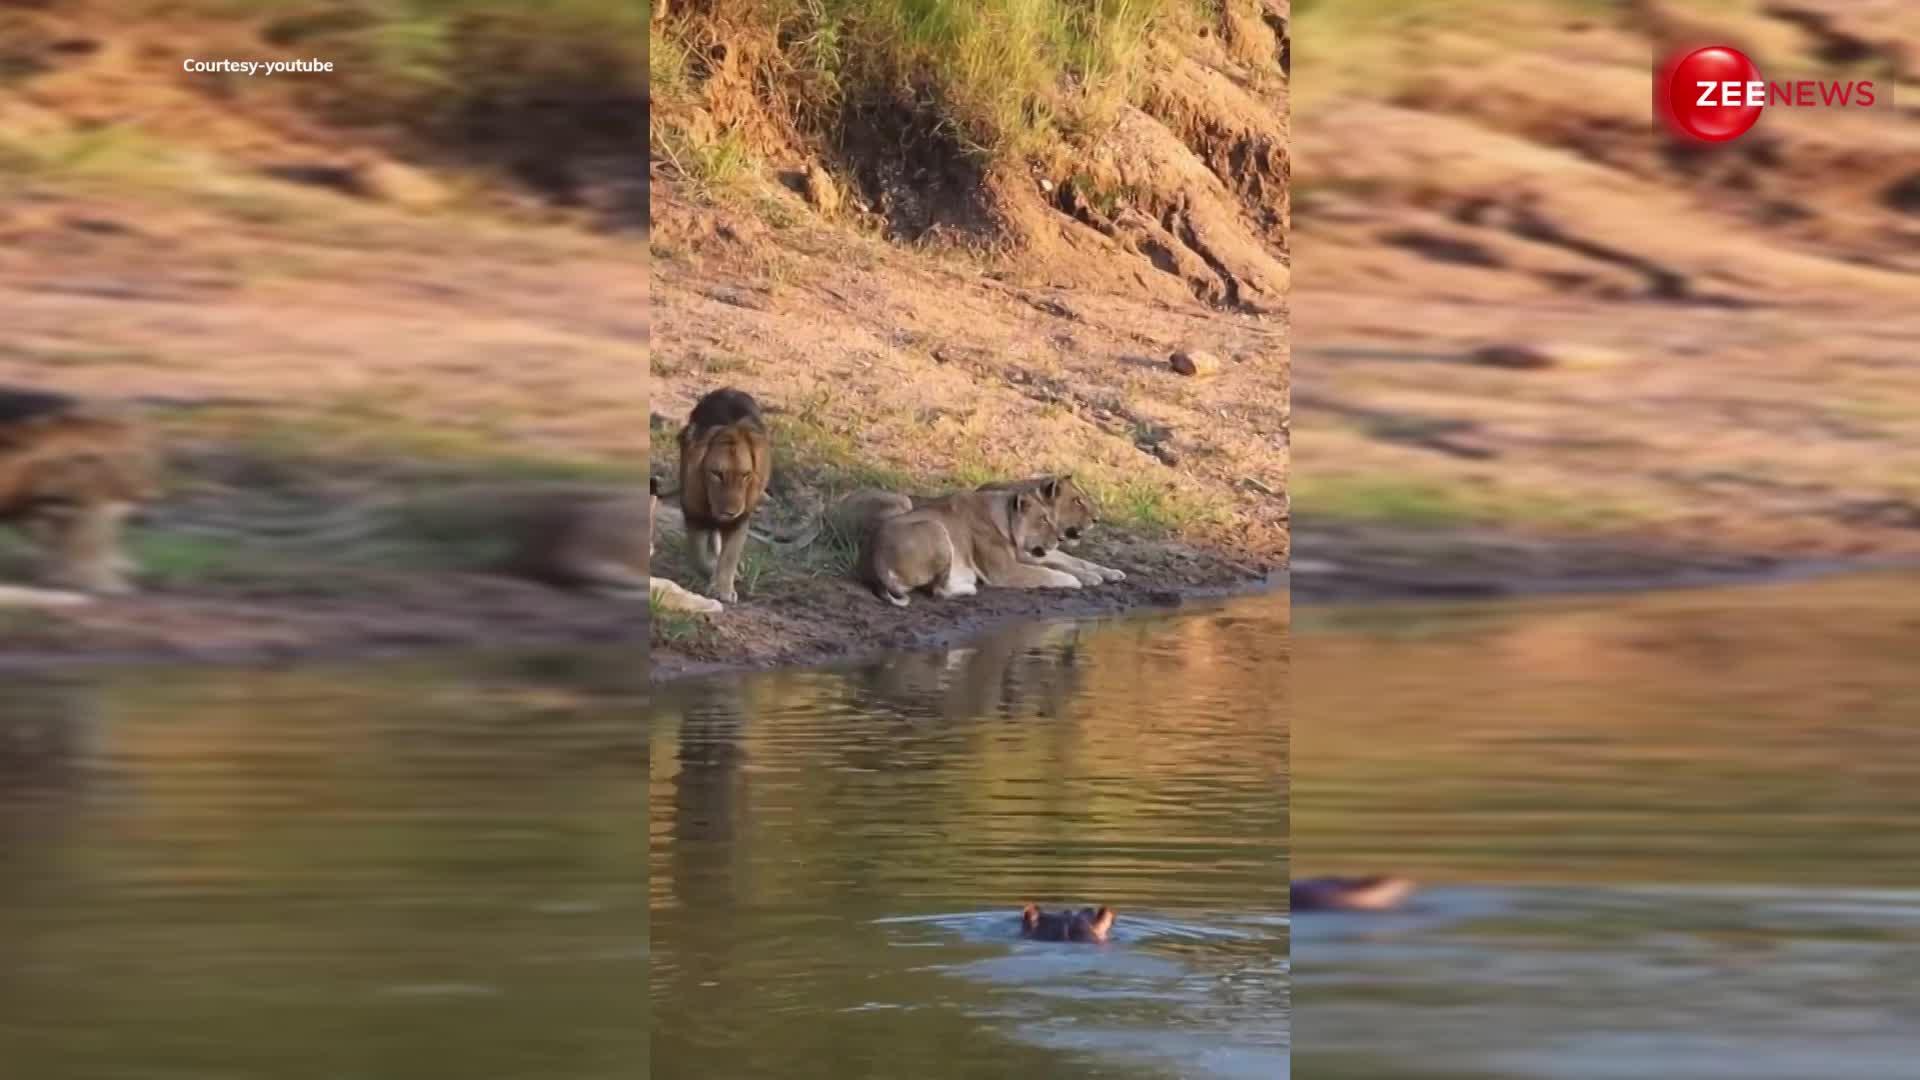 शेर डर गया ! हिप्पो के पानी के बाहर निकलते ही दुम दबाकर भाग निकले शेर